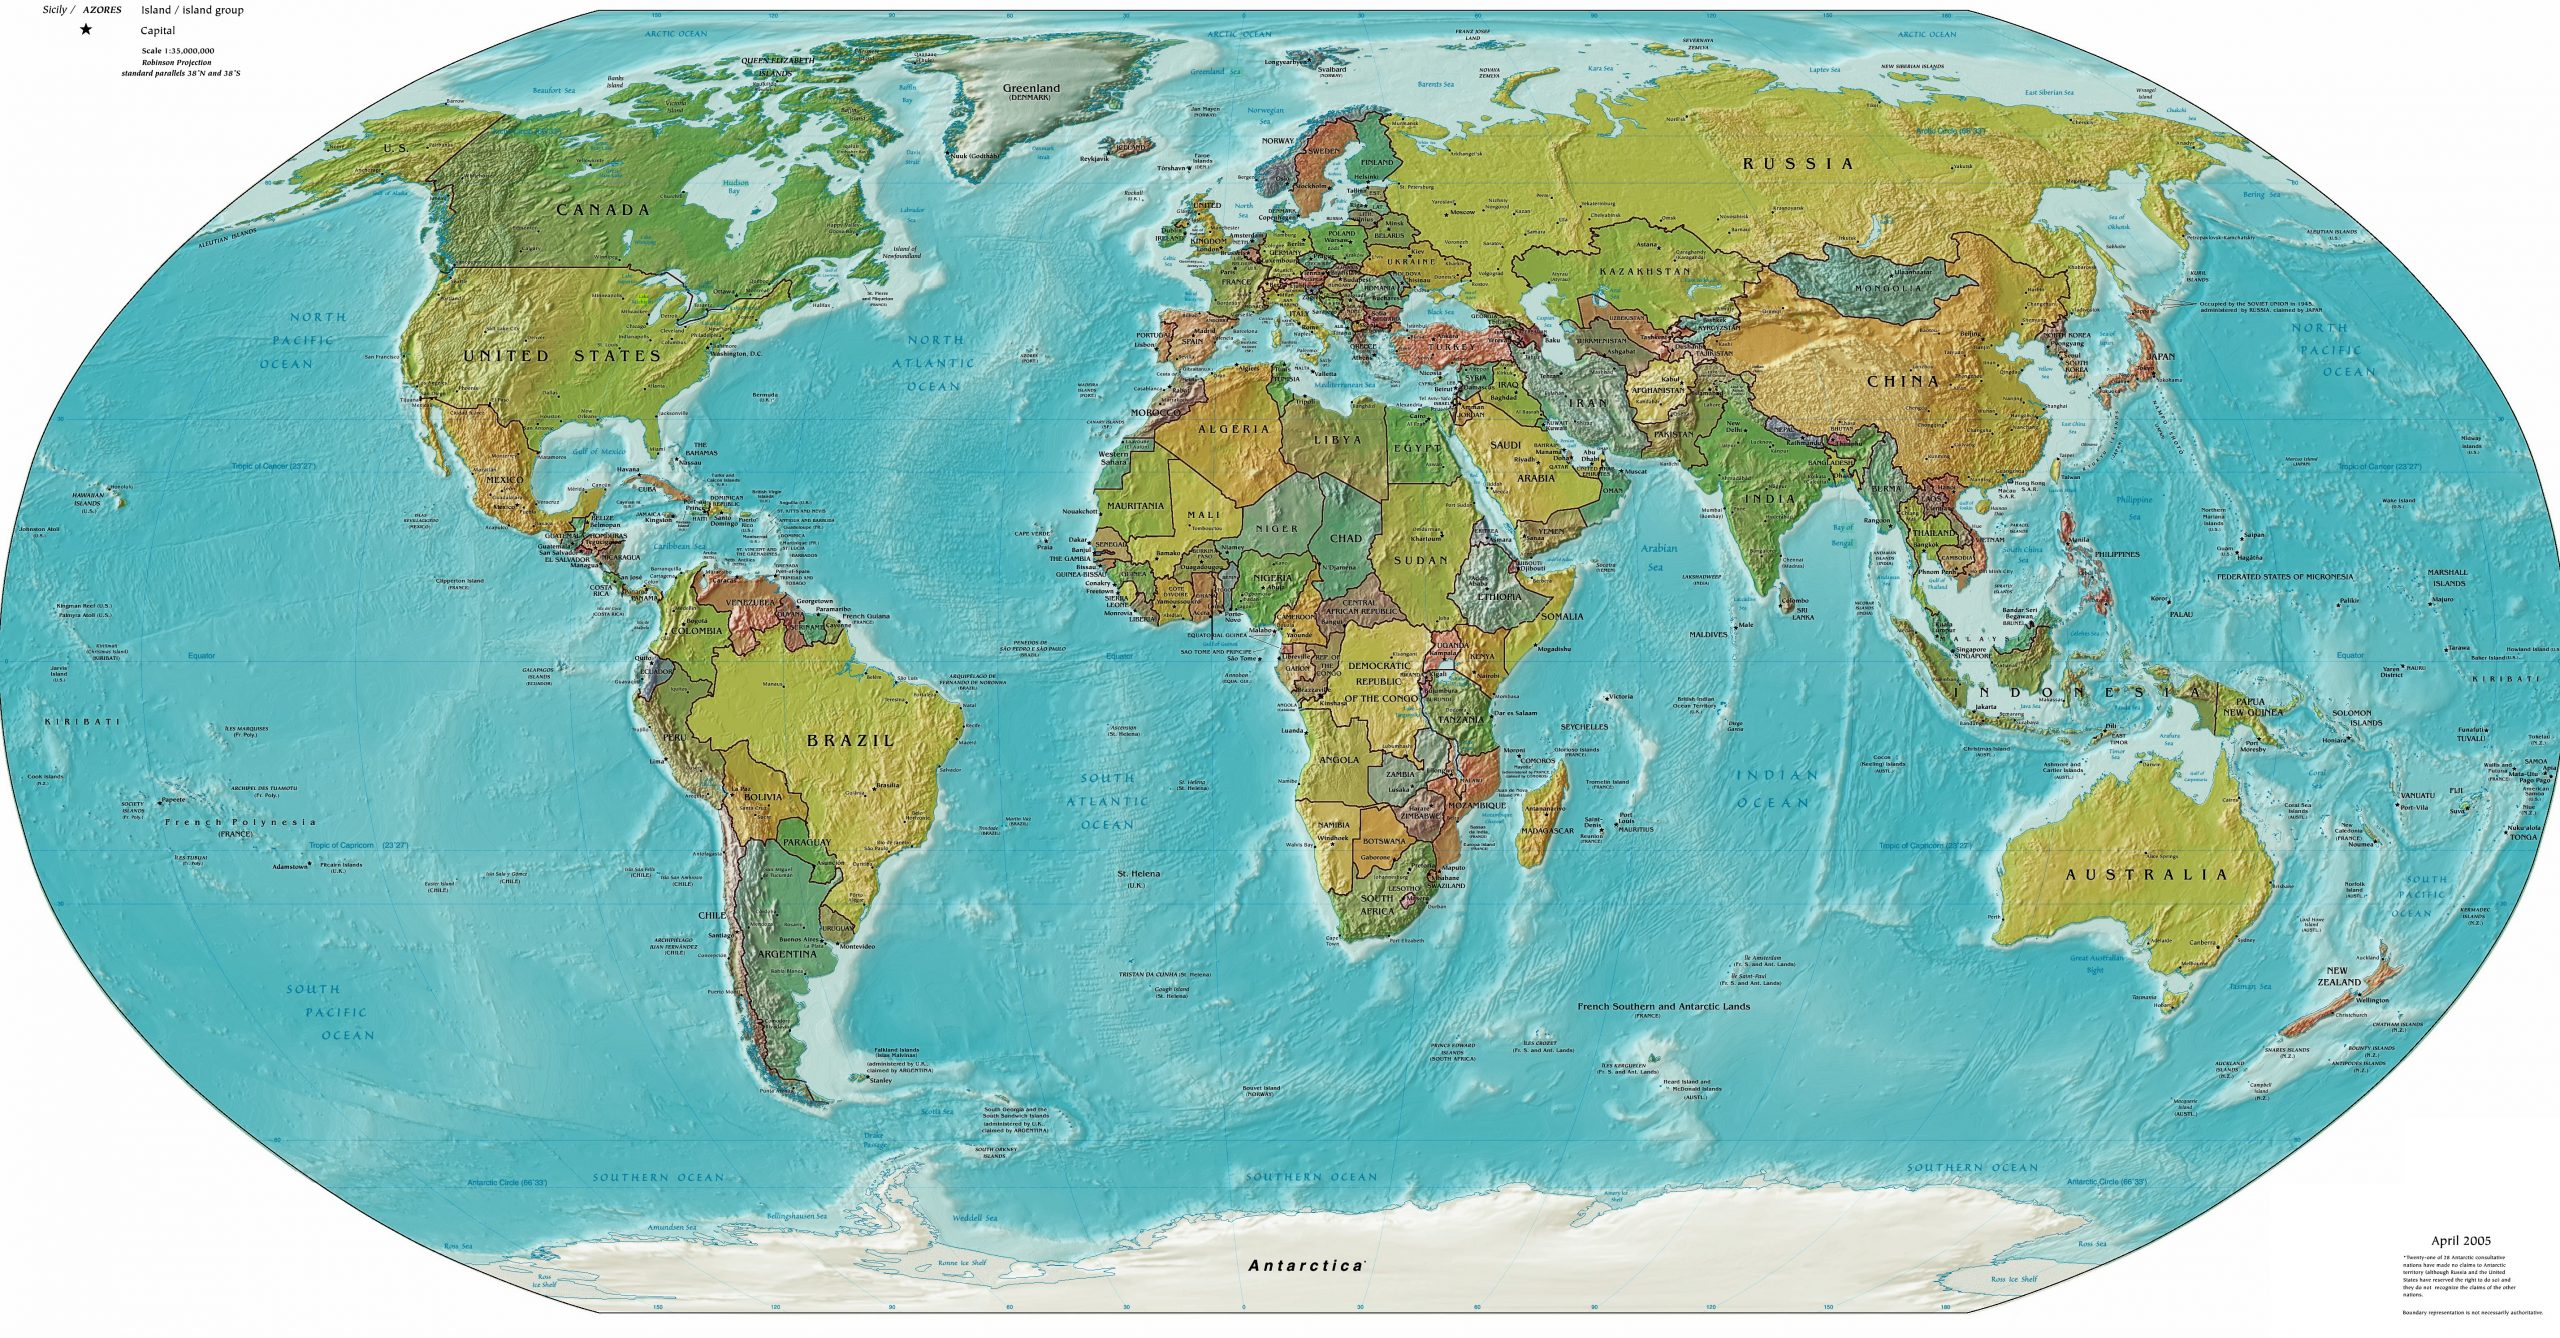 Weltkarte – Wikipedia innen Weltkarte Länder Beschriftet Deutsch